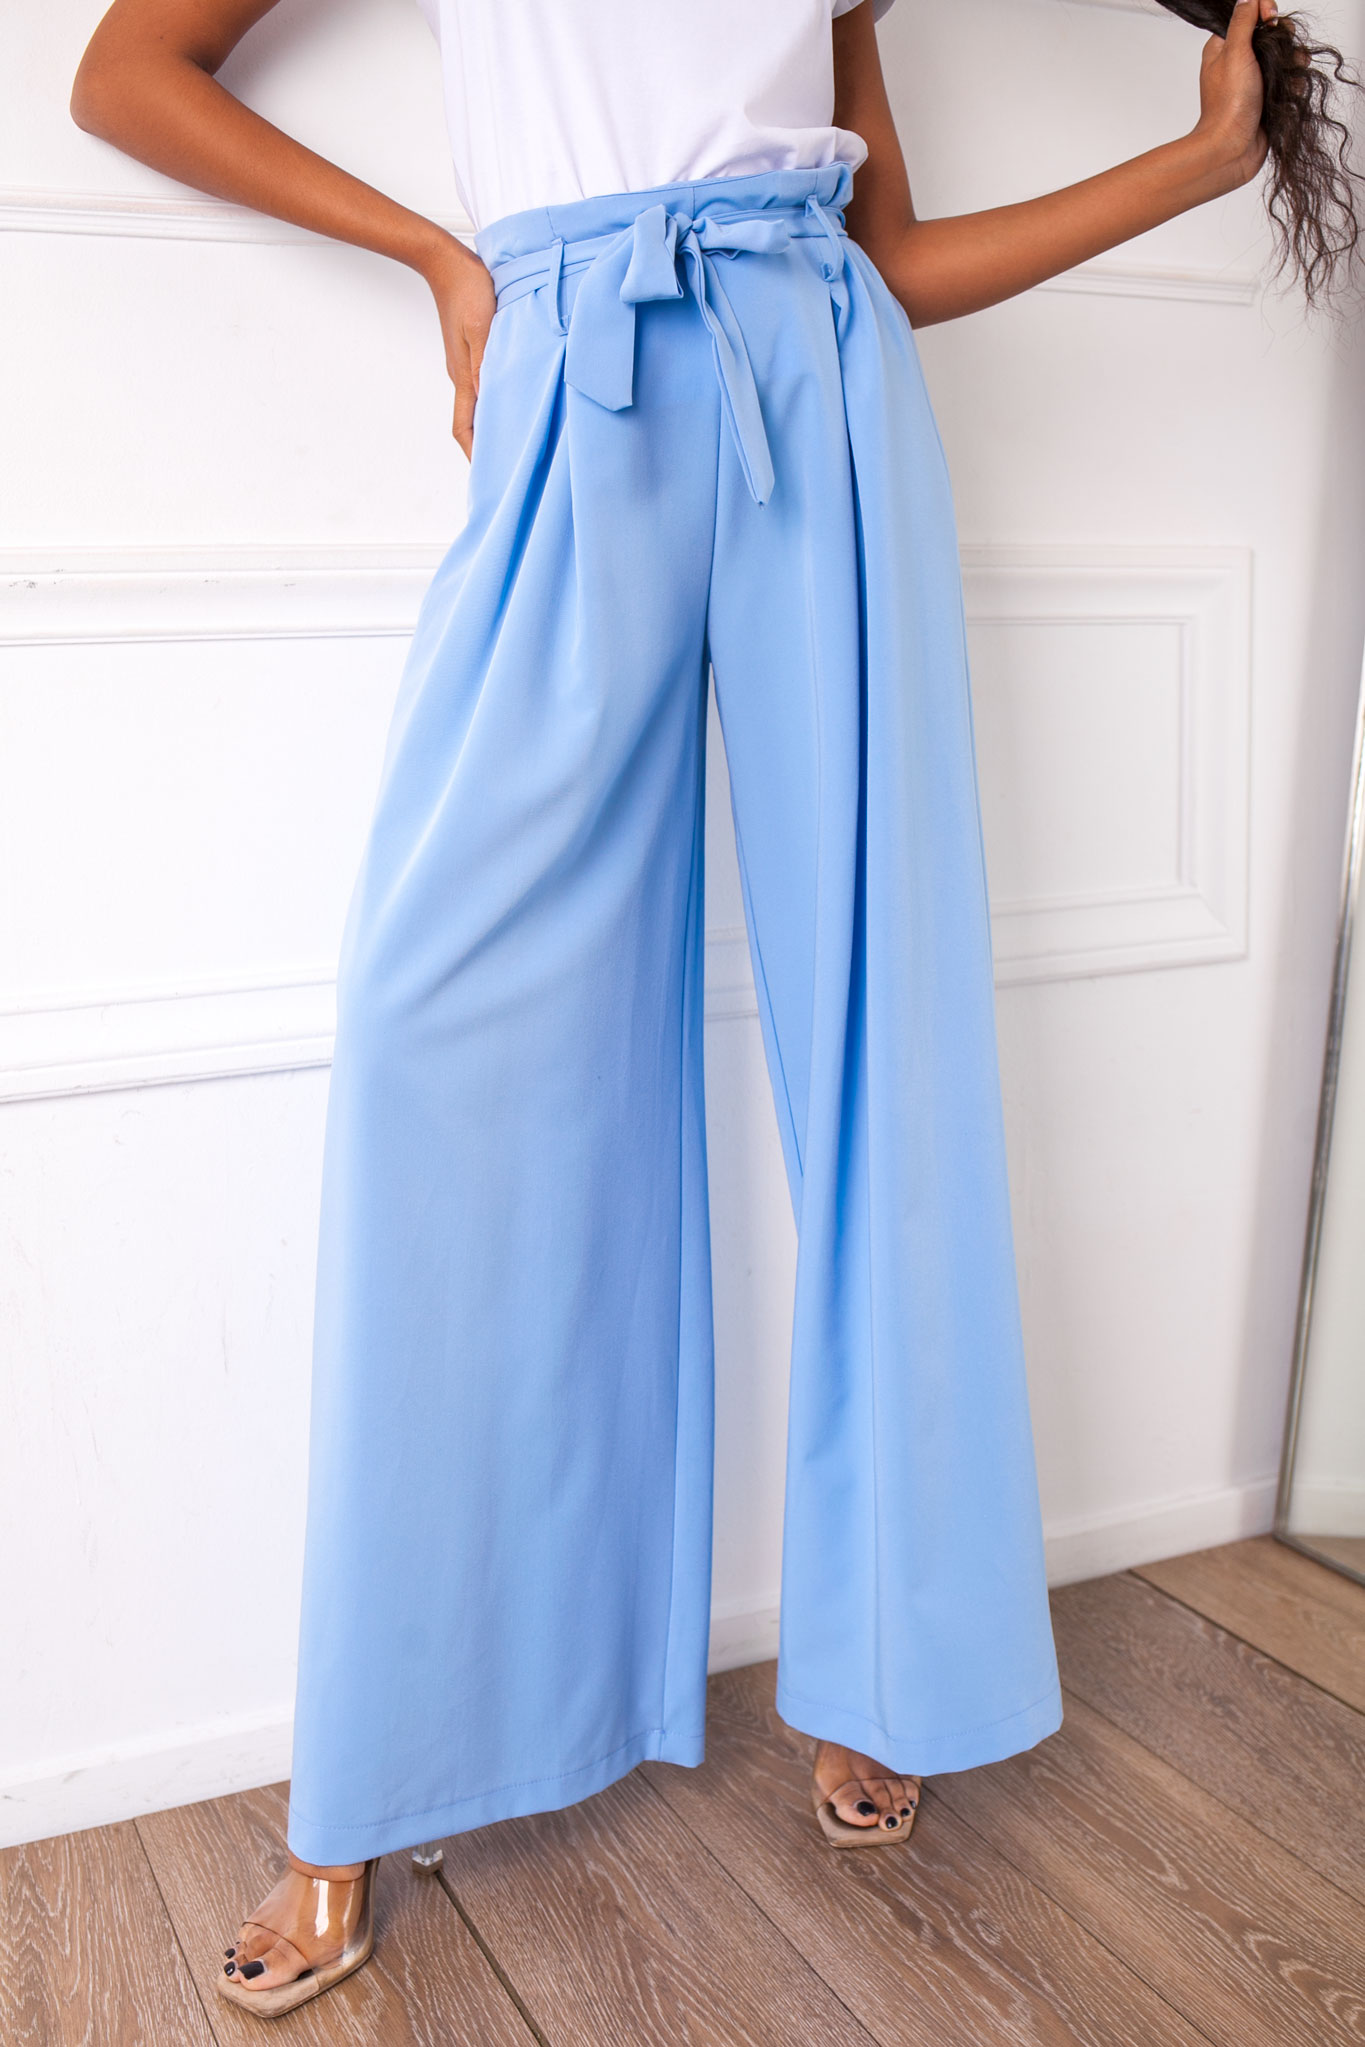 ΠΑΝΤΕΛΟΝΙΑ Illyria υφασμάτινο παντελόνι γαλάζιο